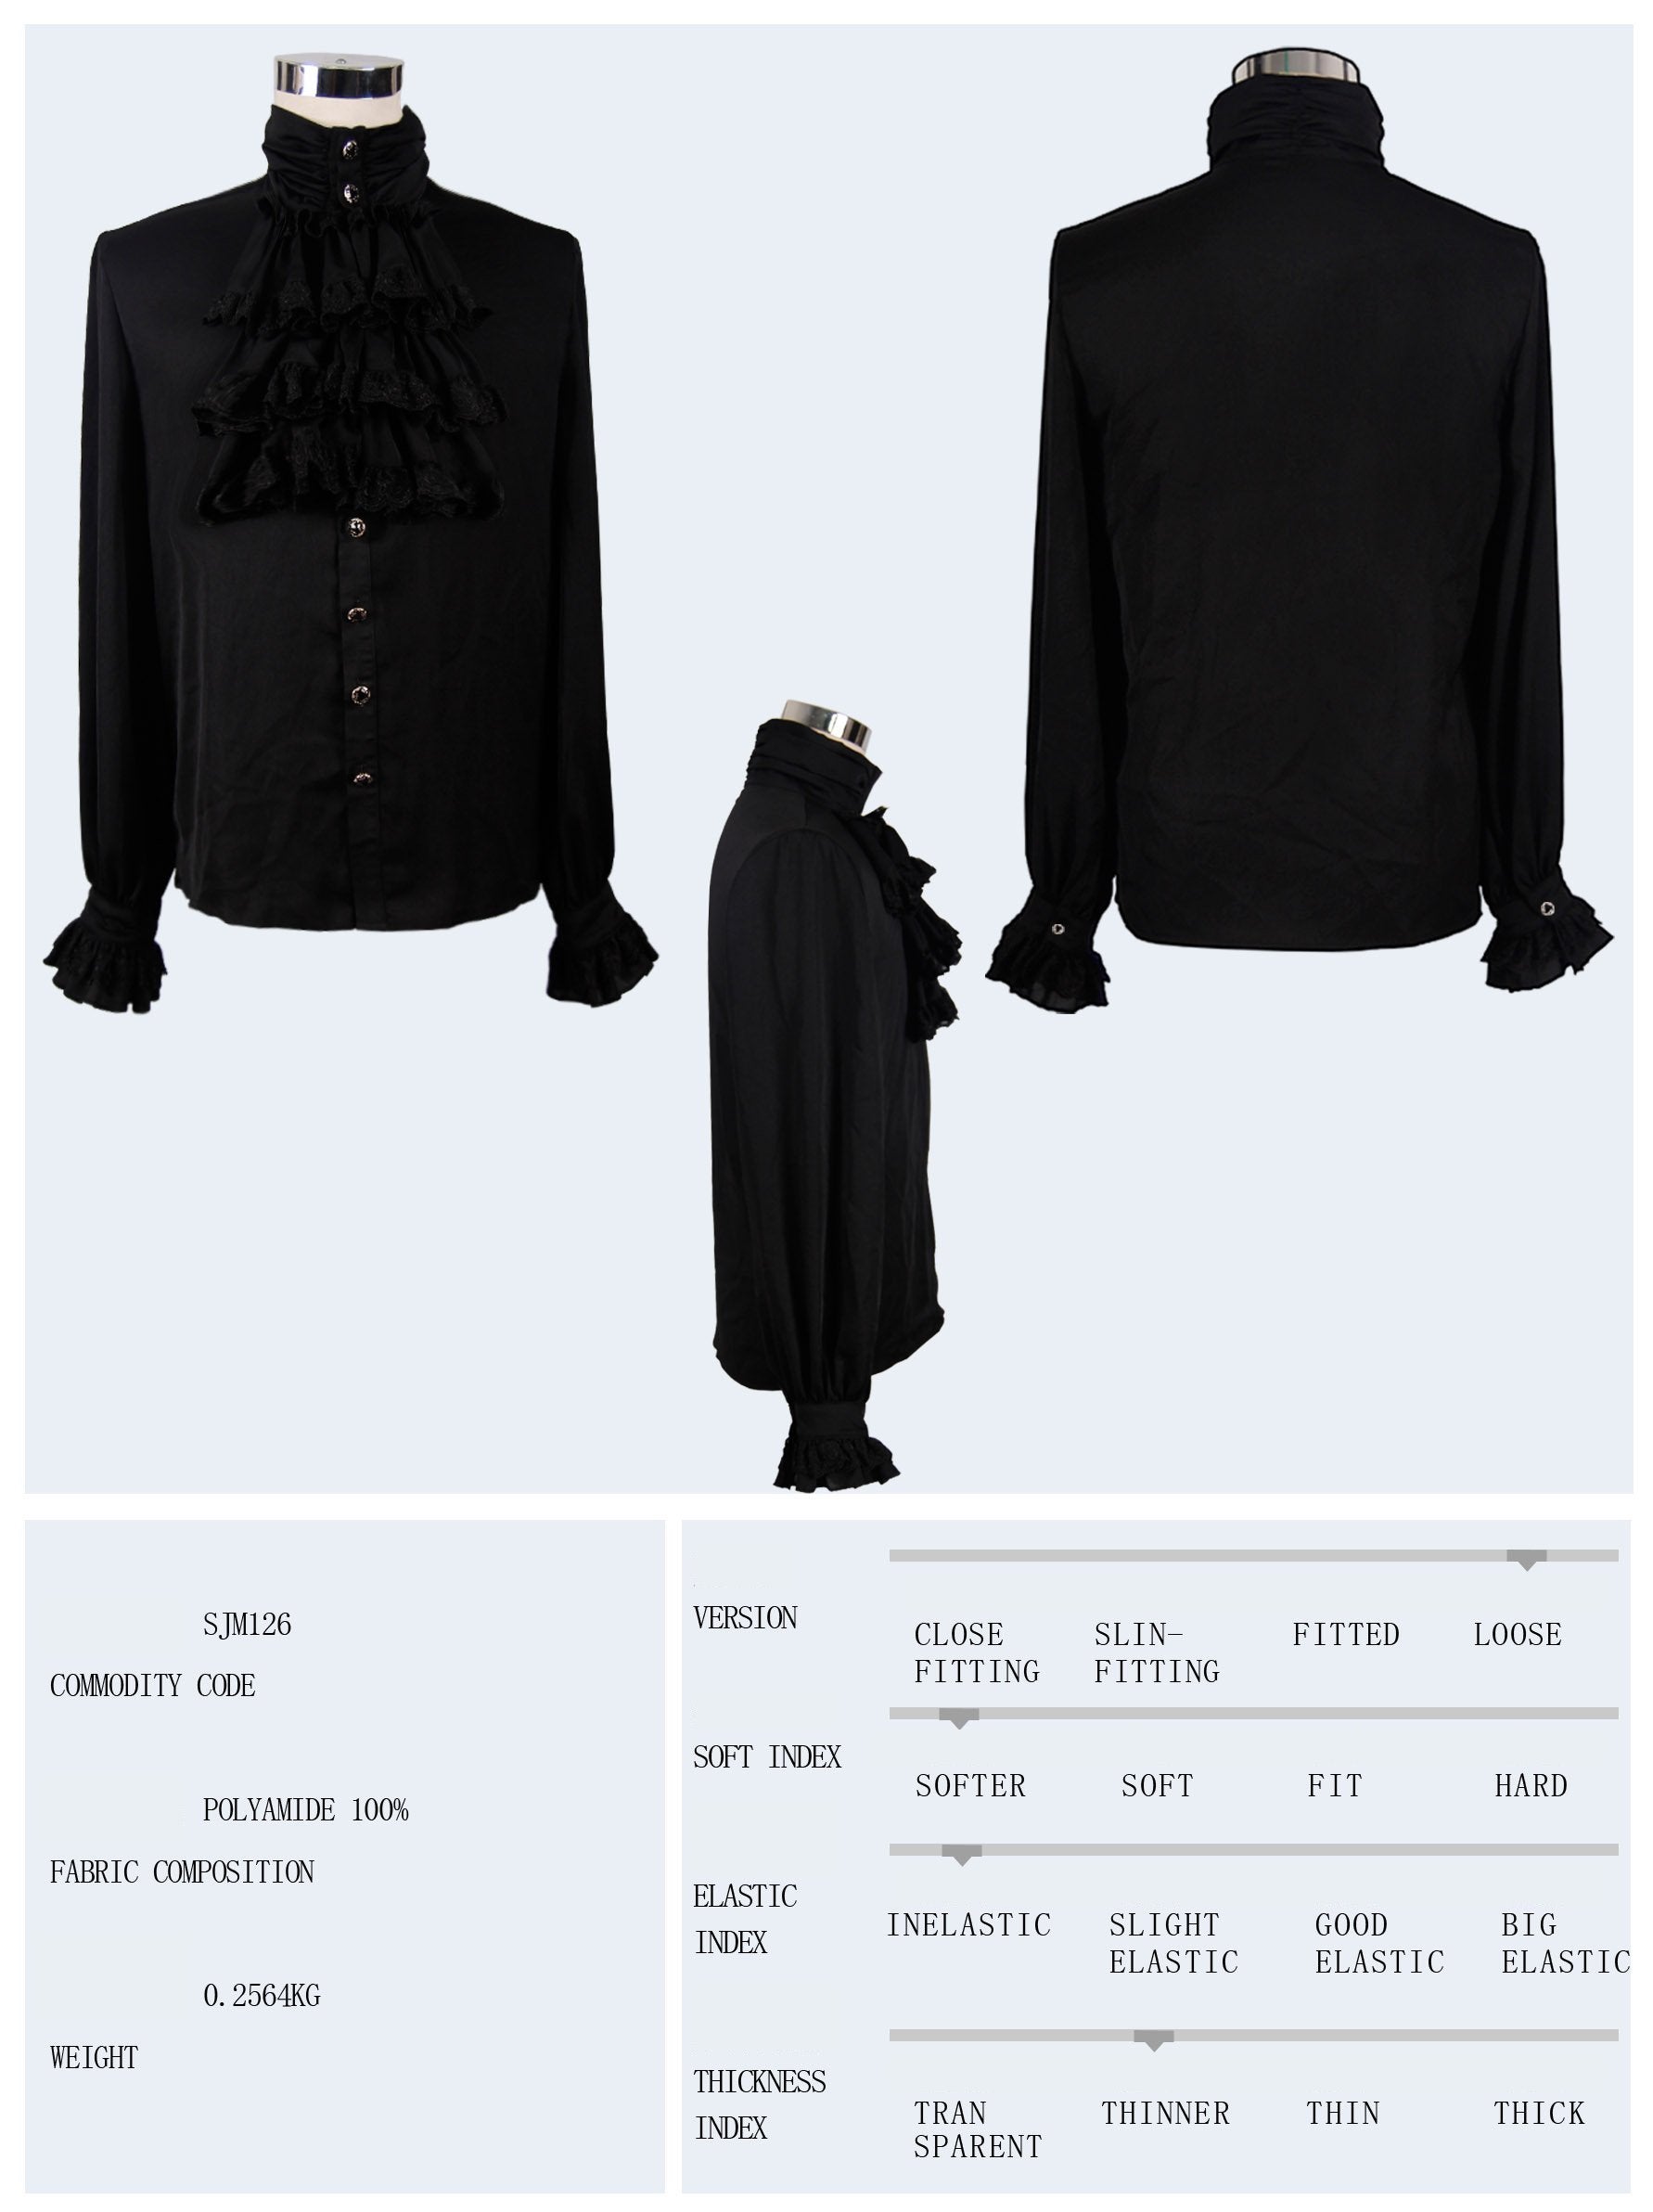 'Iago' Gothic Chiffon Shirt with a Bowtie (Obsidian Night)